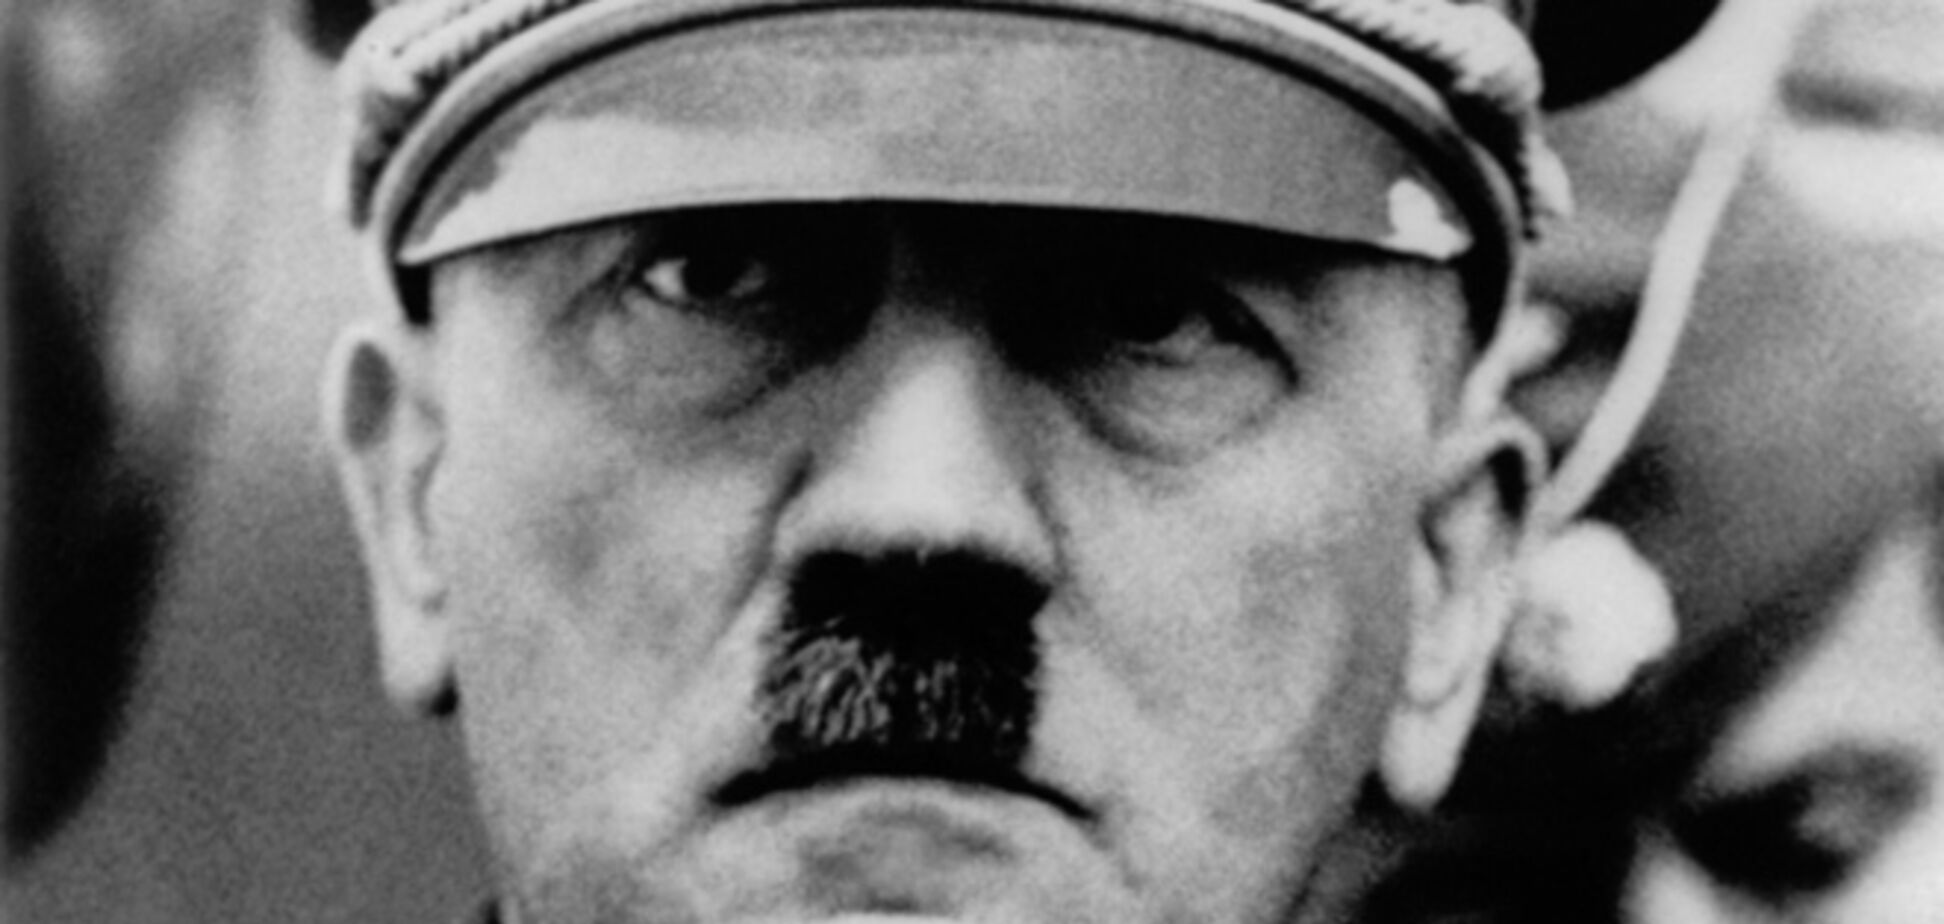 Бывшая горничная Гитлера рассказала, что он ел сладости по ночам